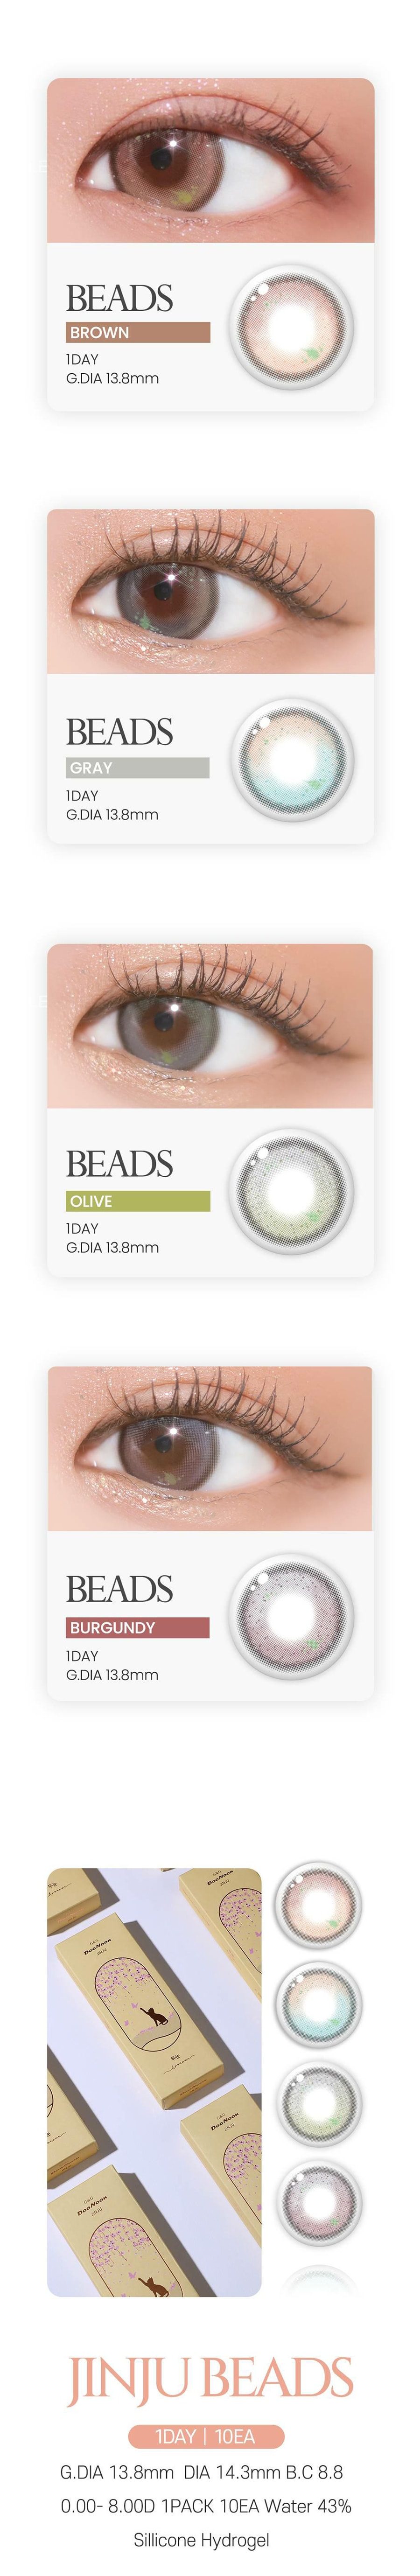 韩国 DooNoon Beads Gray 14.3mm 日抛 一盒 10片 0